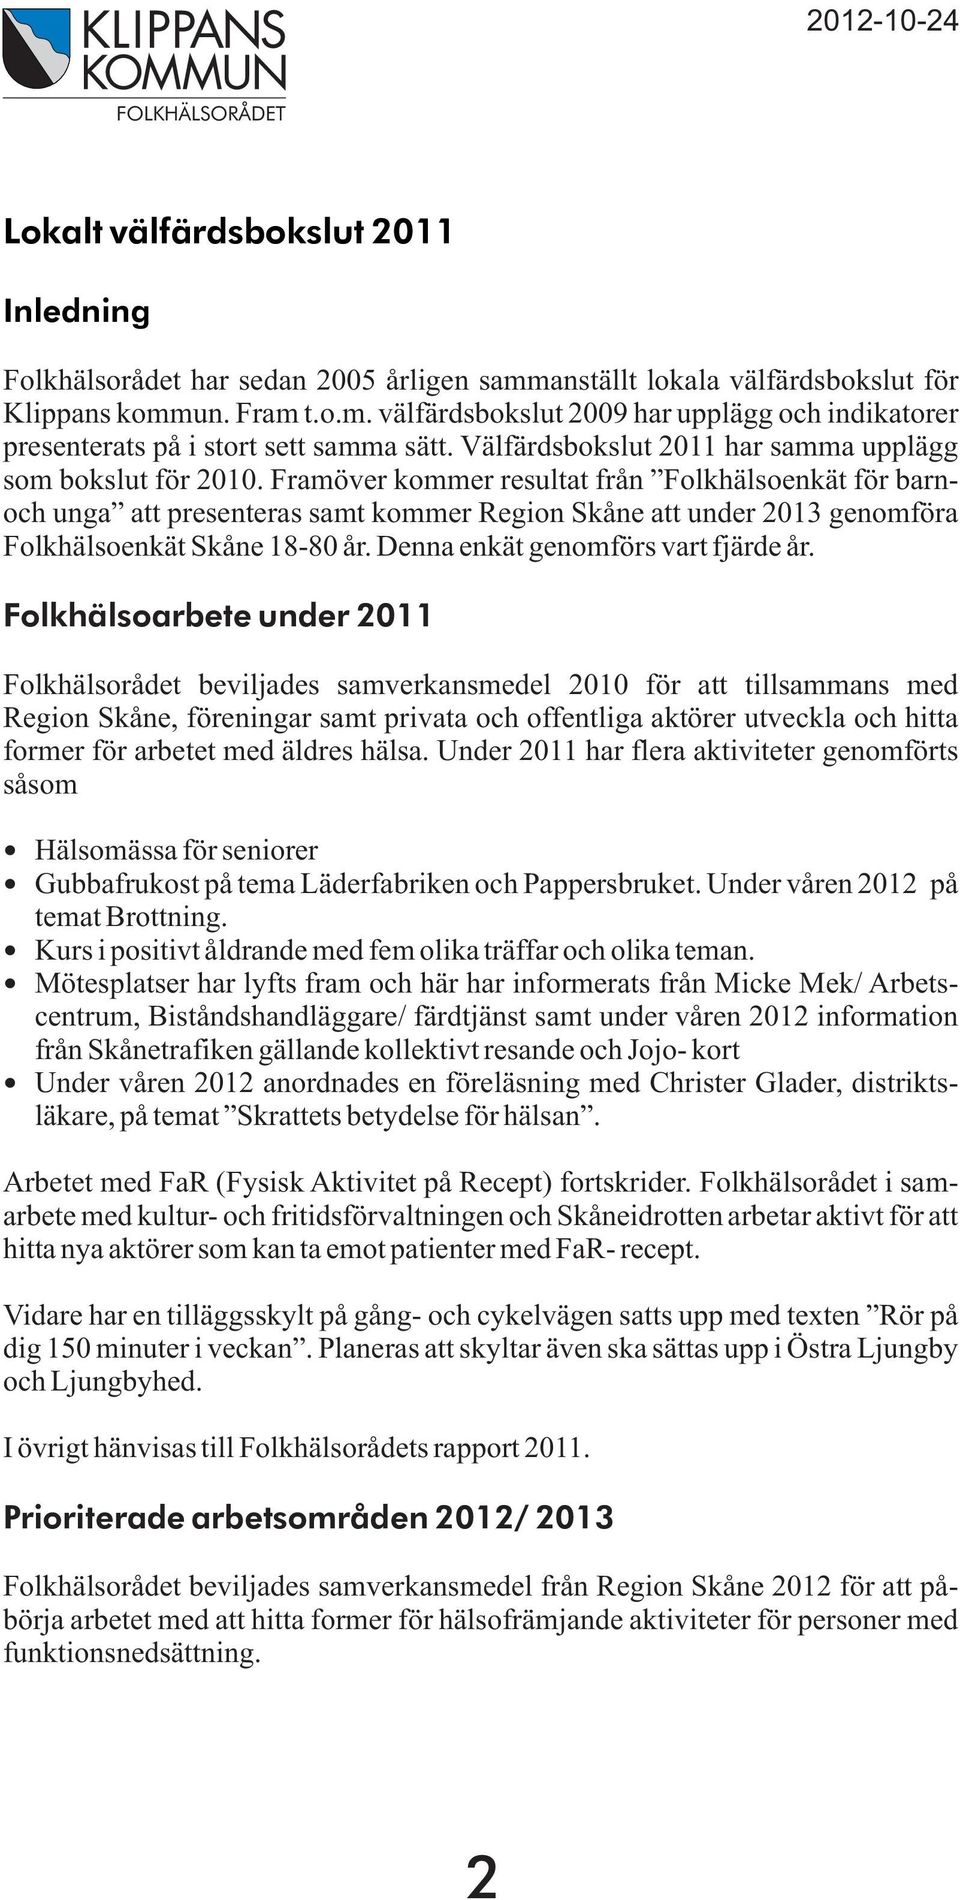 Framöver kommer resultat från Folkhälsoenkät för barnoch unga att presenteras samt kommer Region Skåne att under 2013 genomföra Folkhälsoenkät Skåne 18-80 år. Denna enkät genomförs vart fjärde år.